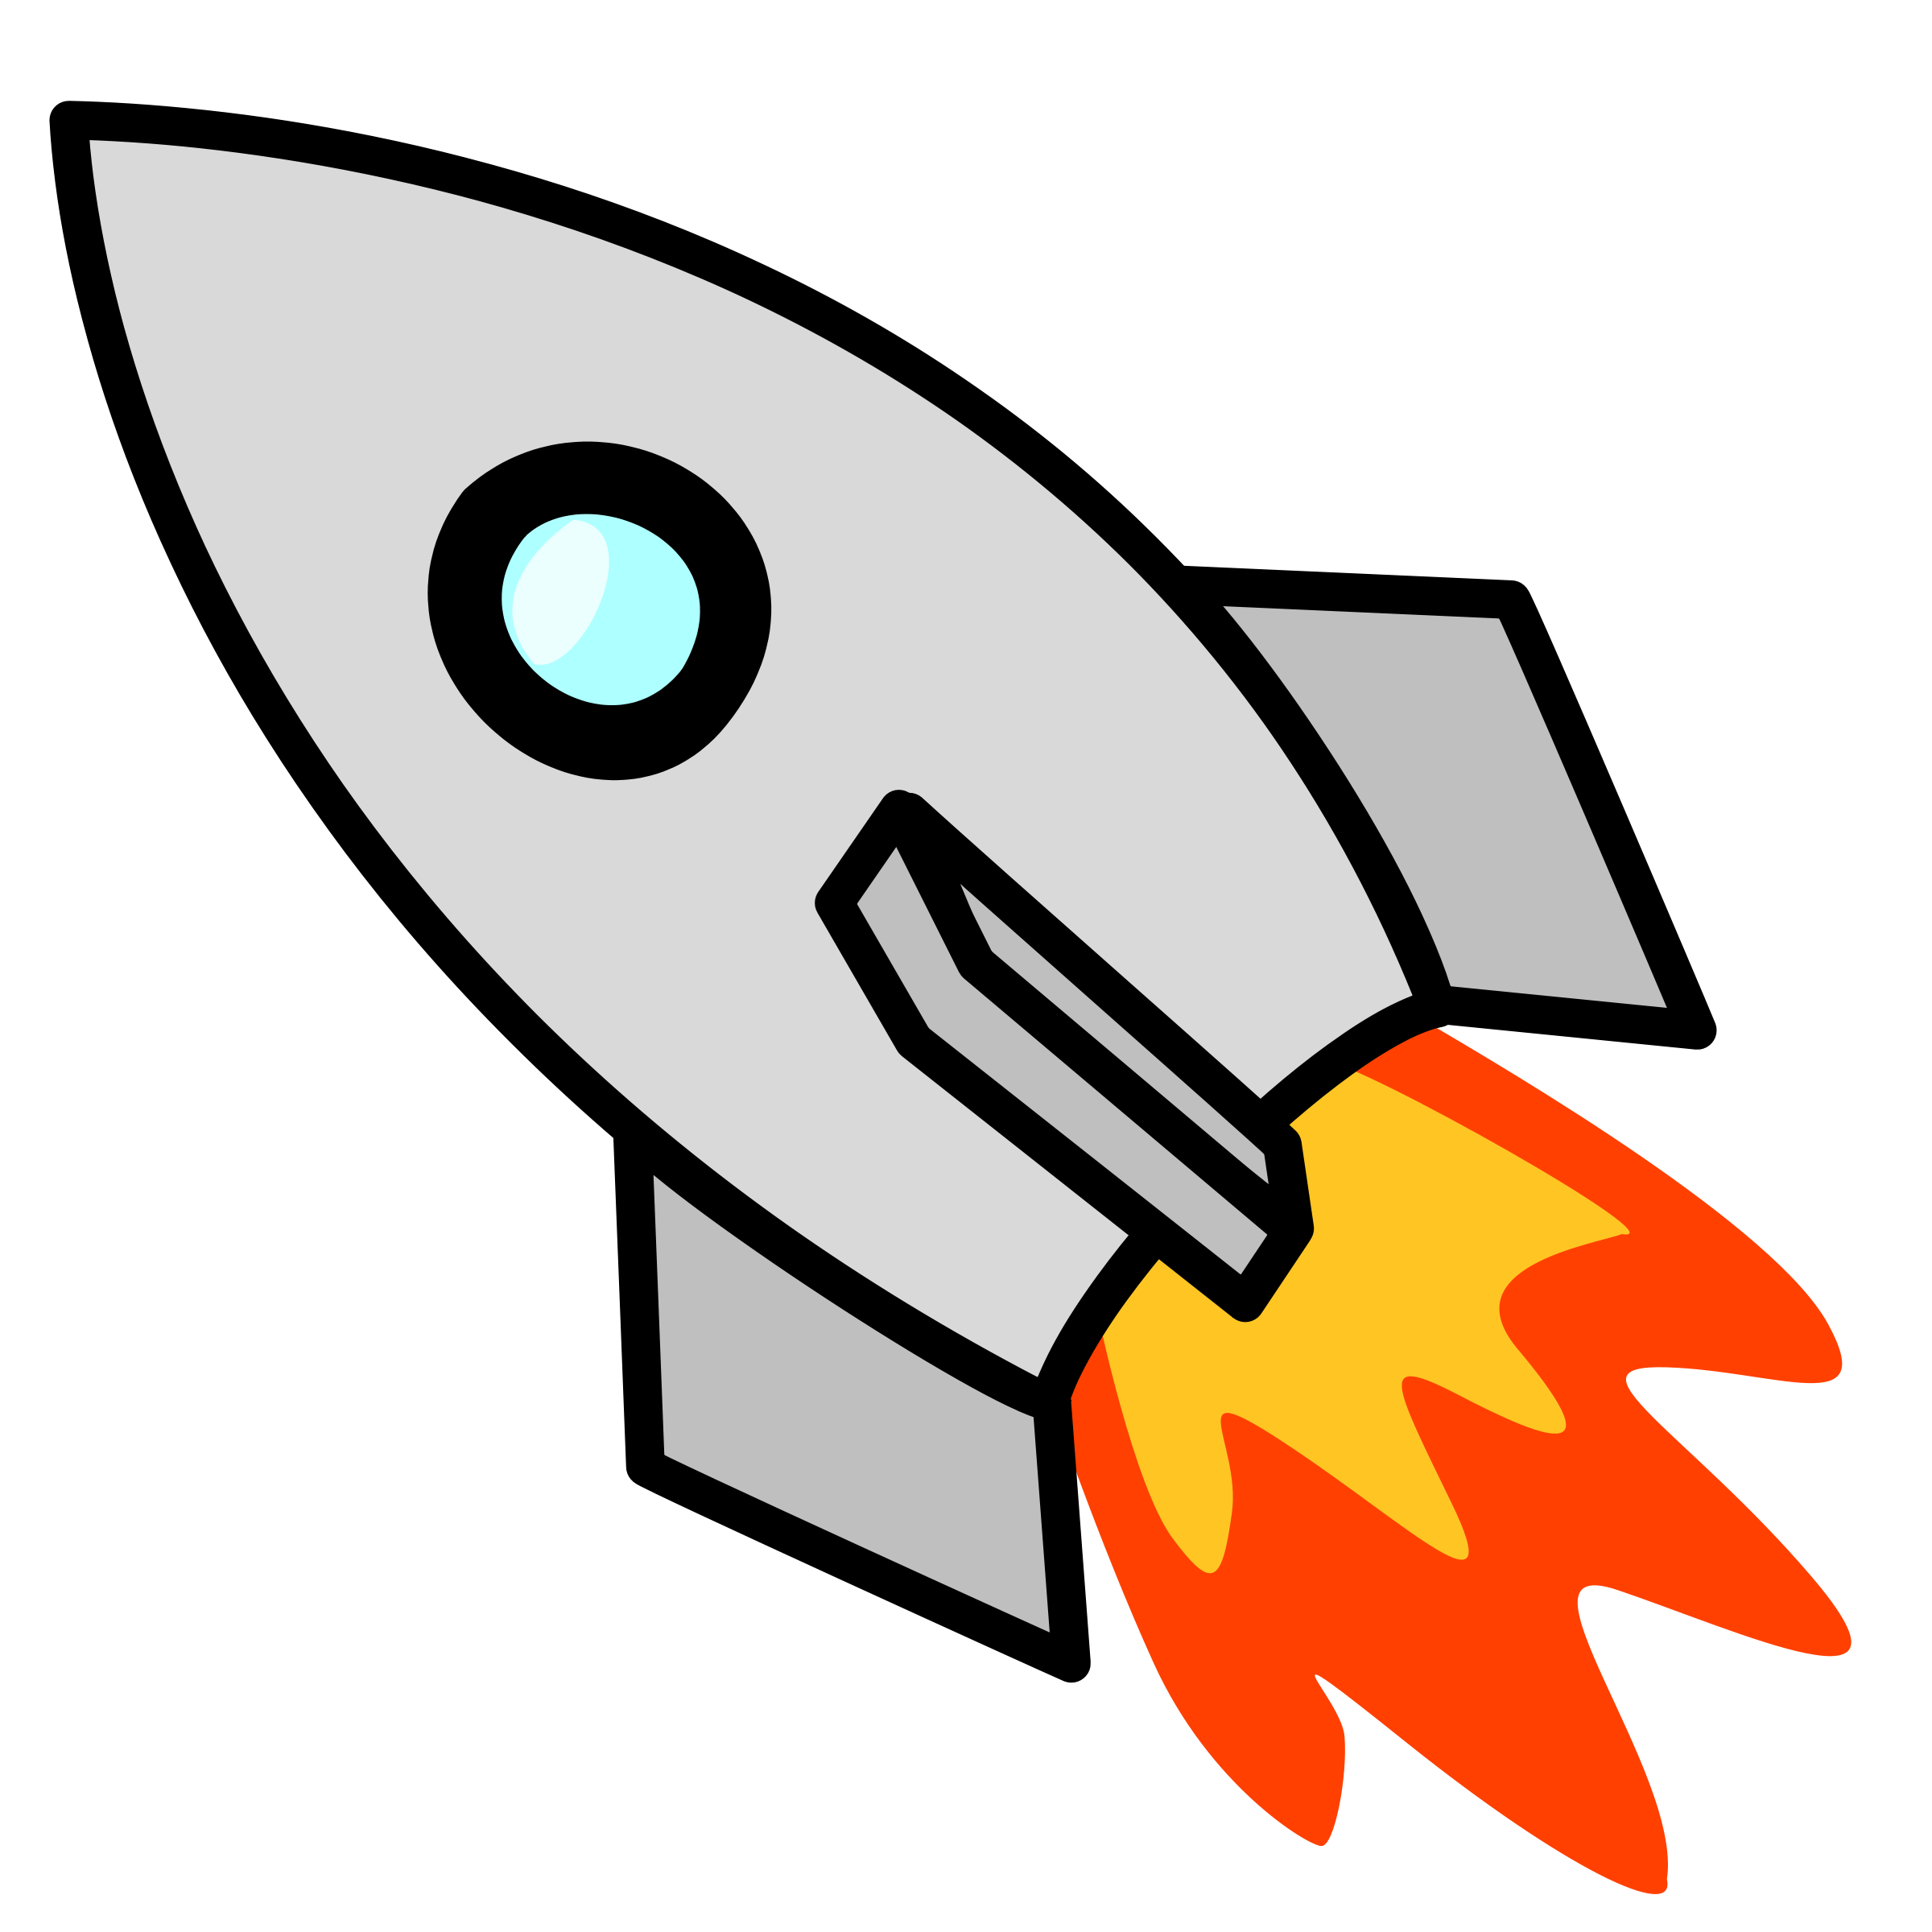 Rocket Cartoon Png - ClipArt Best